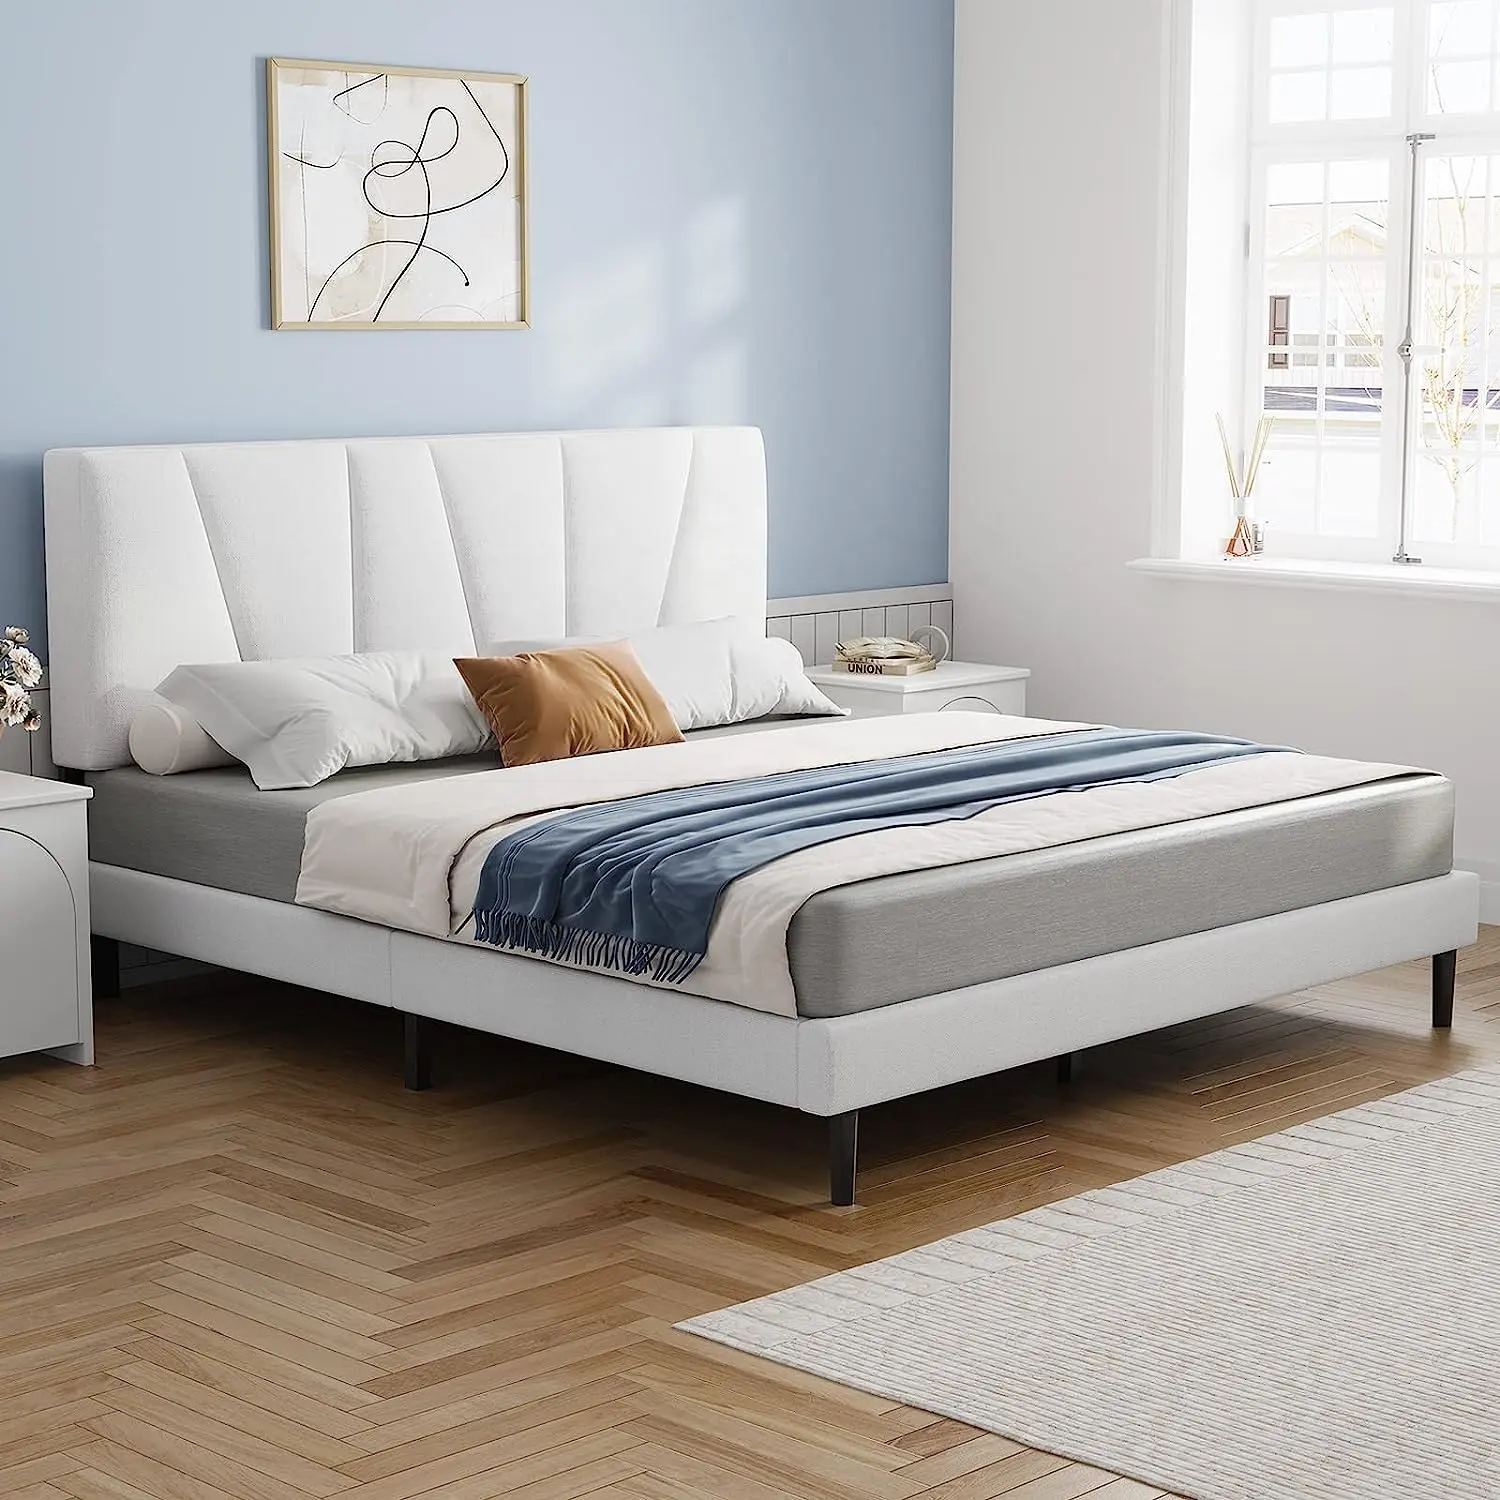 Projeto exclusivo plataforma cama luxo moderno king size cama queen size mobília do quarto conjunto estofado cama quadro com cabeceira